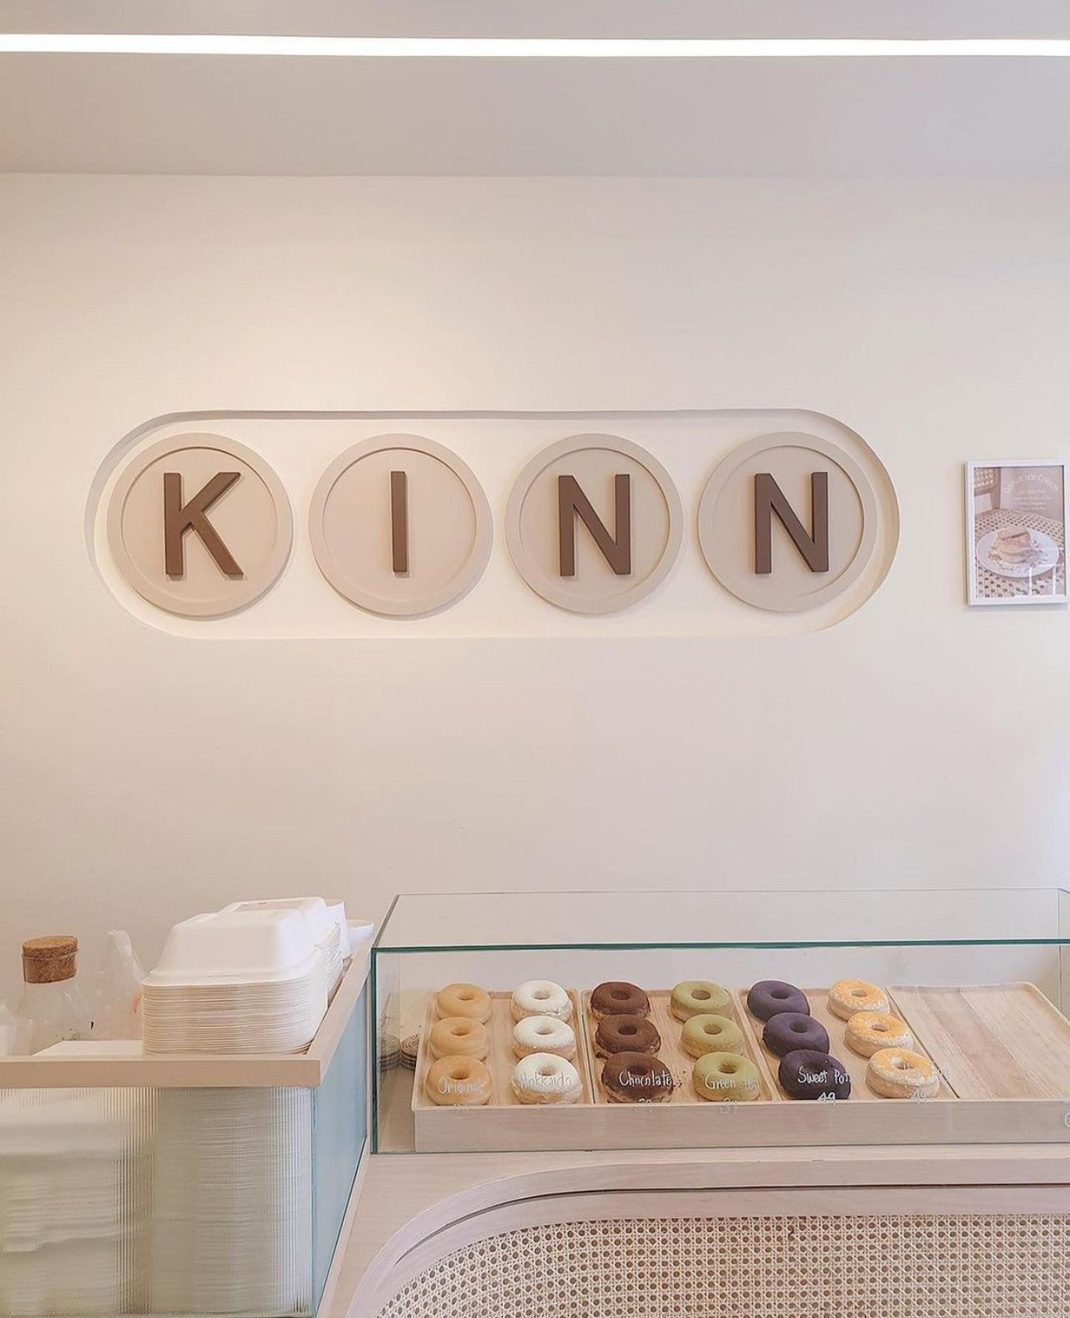 甜甜圈和咖啡店Kinn Bake 台湾 甜甜圈 咖啡店 简洁 logo设计 vi设计 空间设计